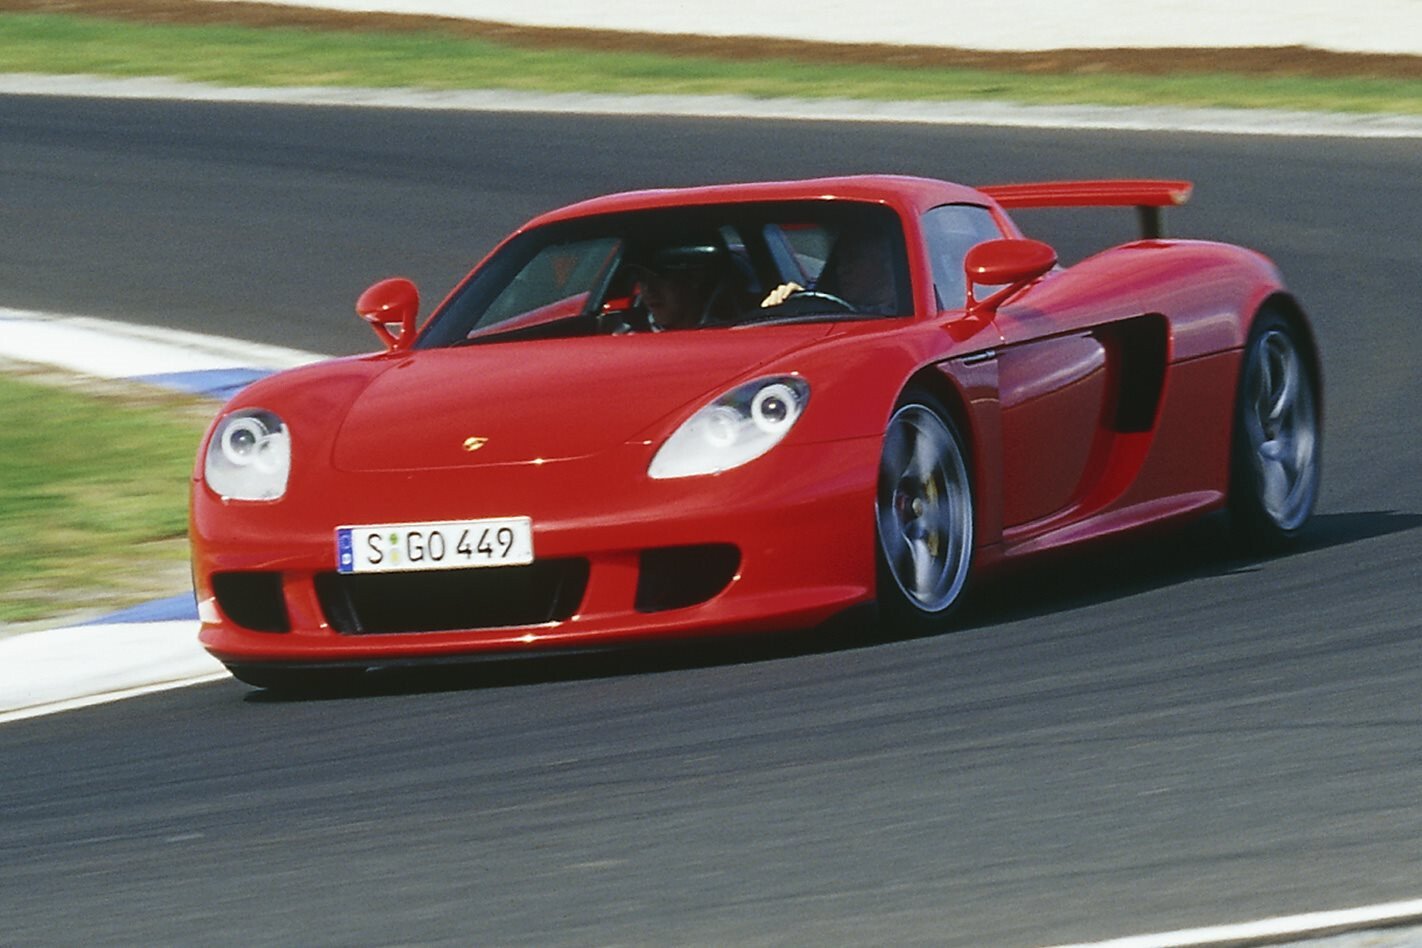 Porsche 911 Carrera gt. Porsche Carrera gt 2002. Порше Каррера gt 3. Porsche Carrera gt Red. Тачки похожие